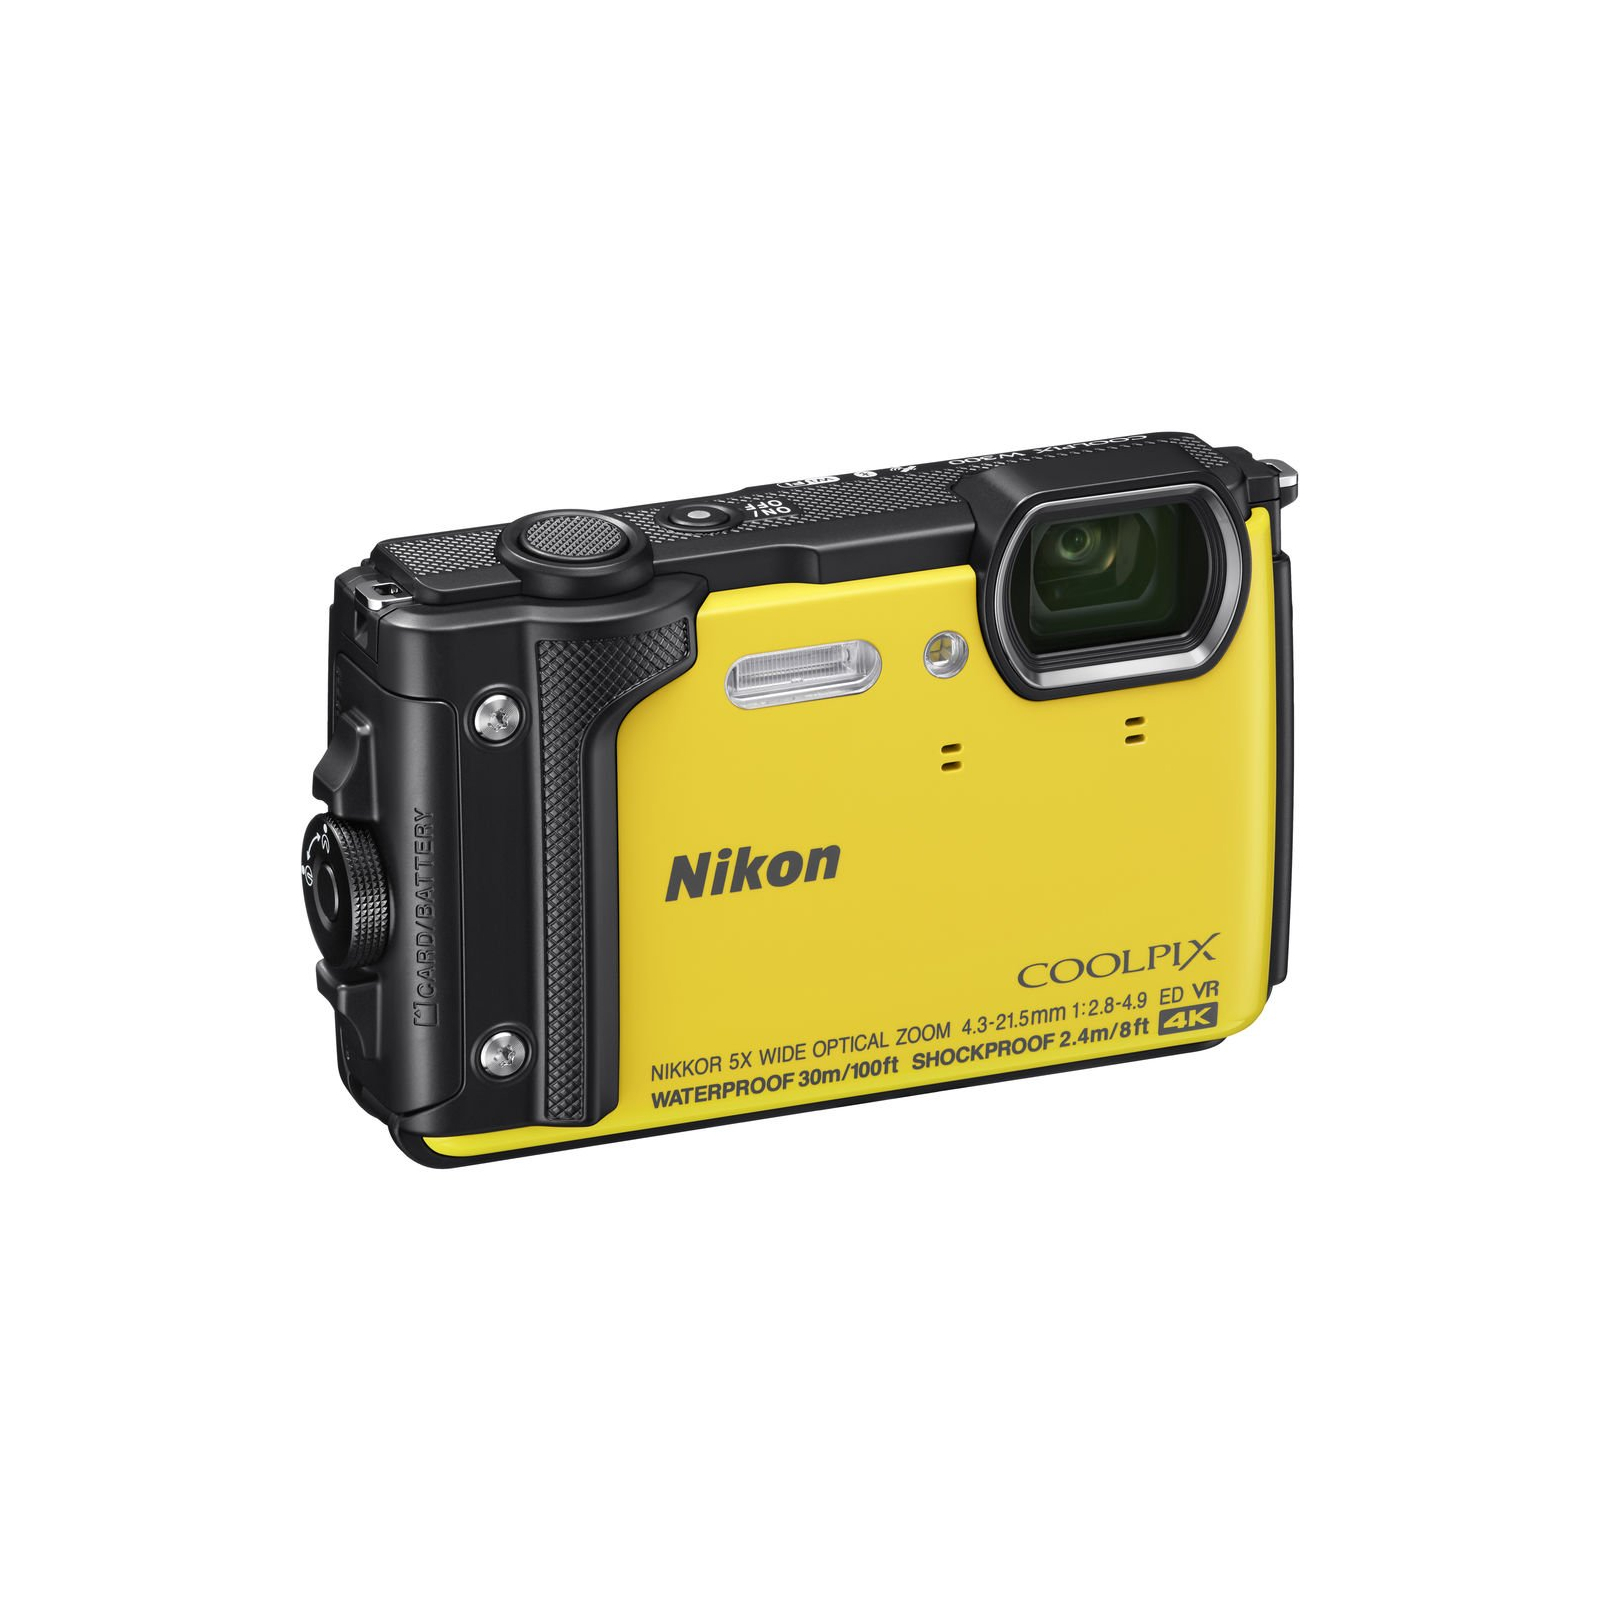 Цифровий фотоапарат Nikon Coolpix W300 Camouflage (VQA073E1) зображення 3